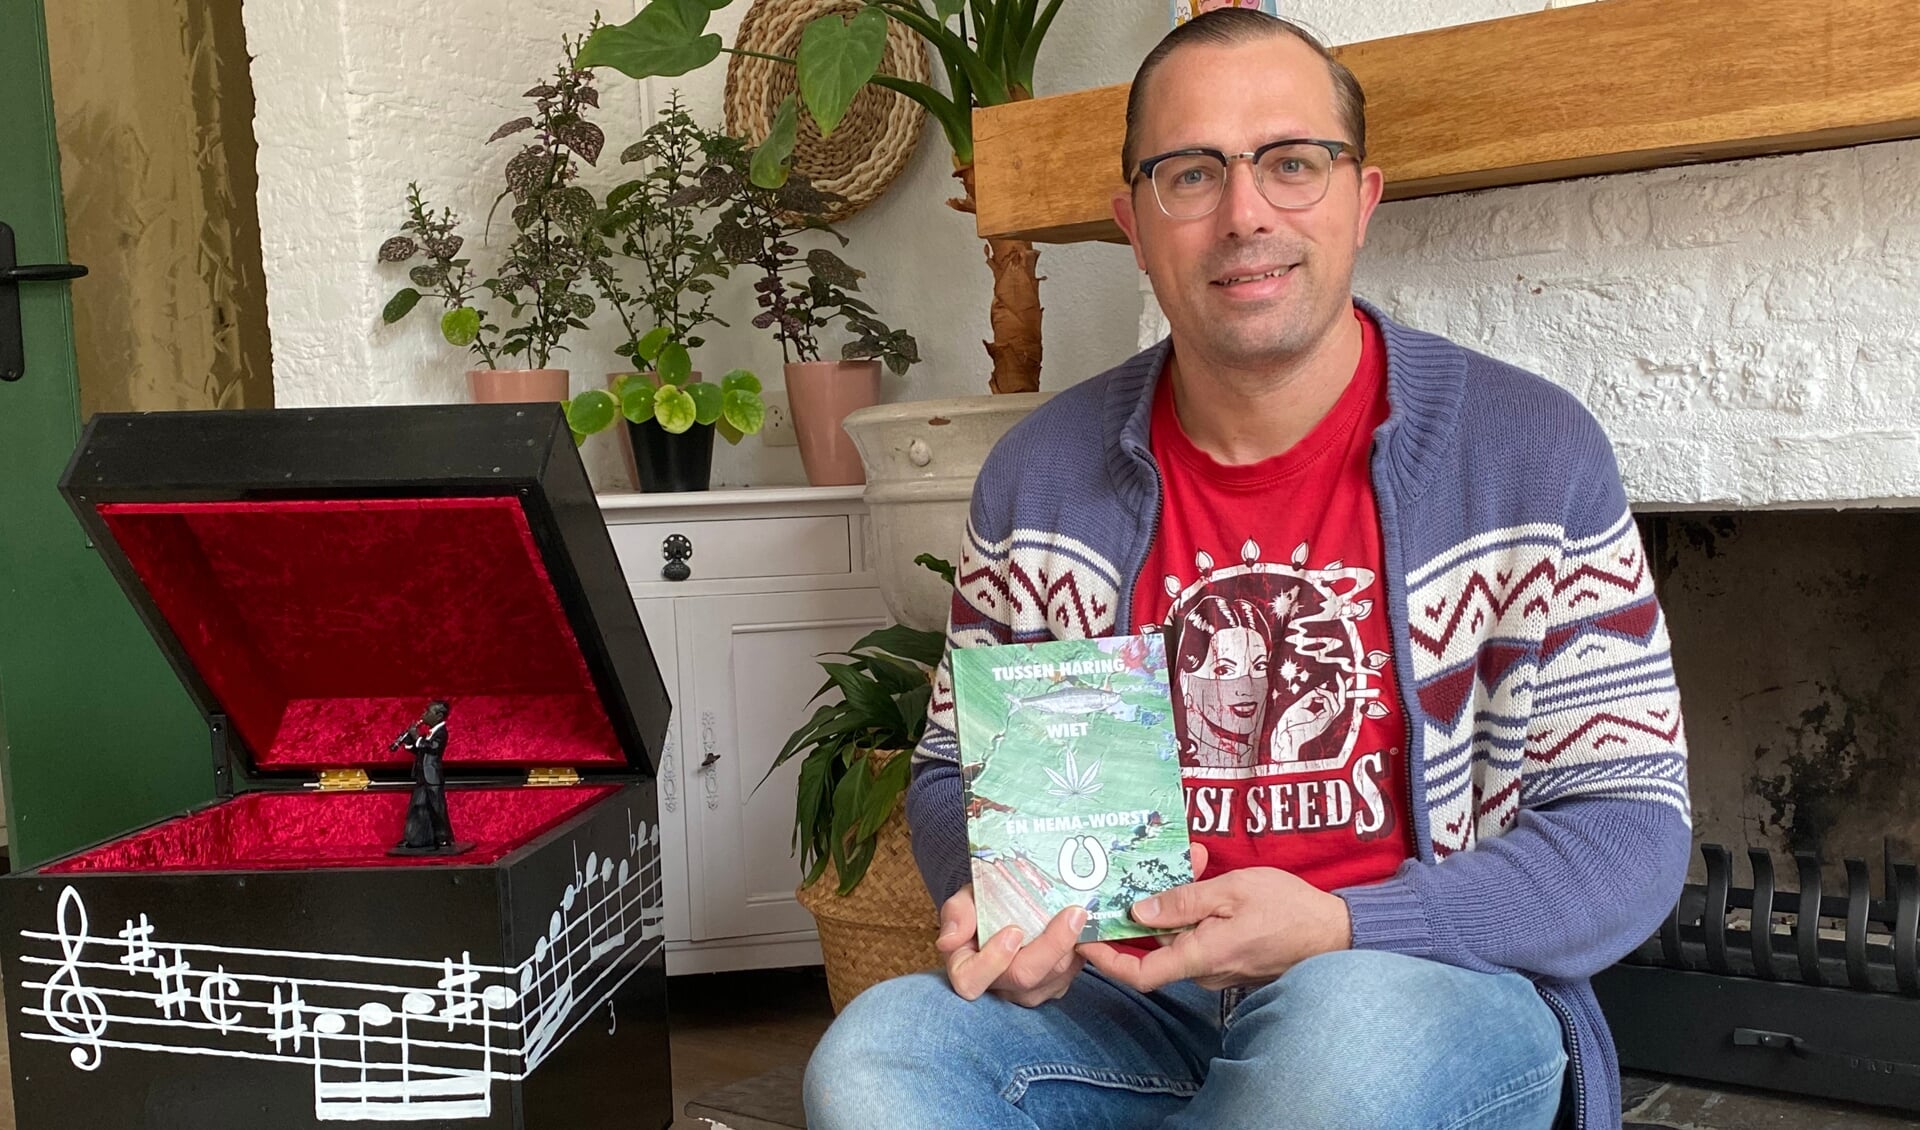 Schrijver Martijn Stevens met zijn nieuwe boek Haring, wiet en Hema-worst bij de openhaard. (Tekst en foto: Jos Gröniger)